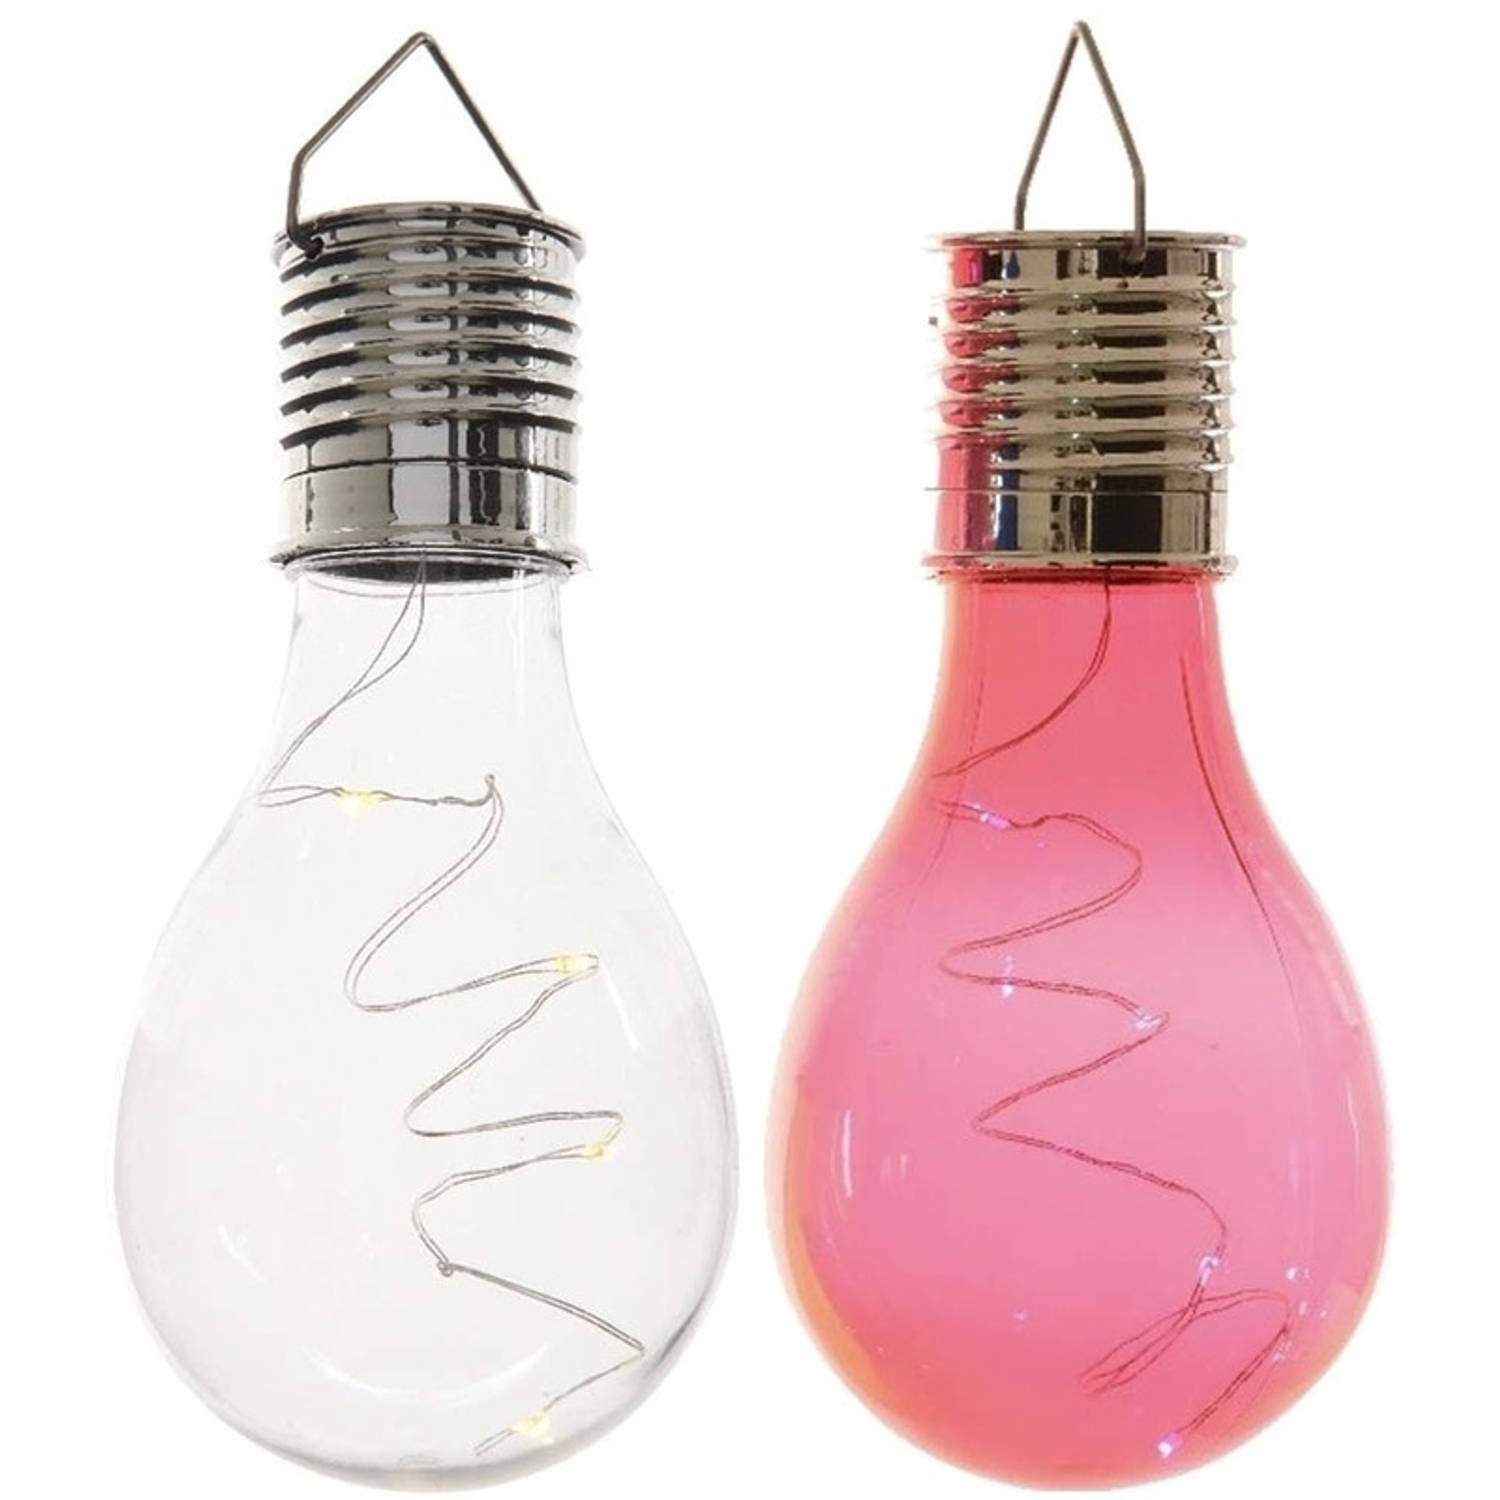 2x Buitenlampen/tuinlampen lampbolletjes/peertjes 14 cm transparant/rood - Buitenverlichting